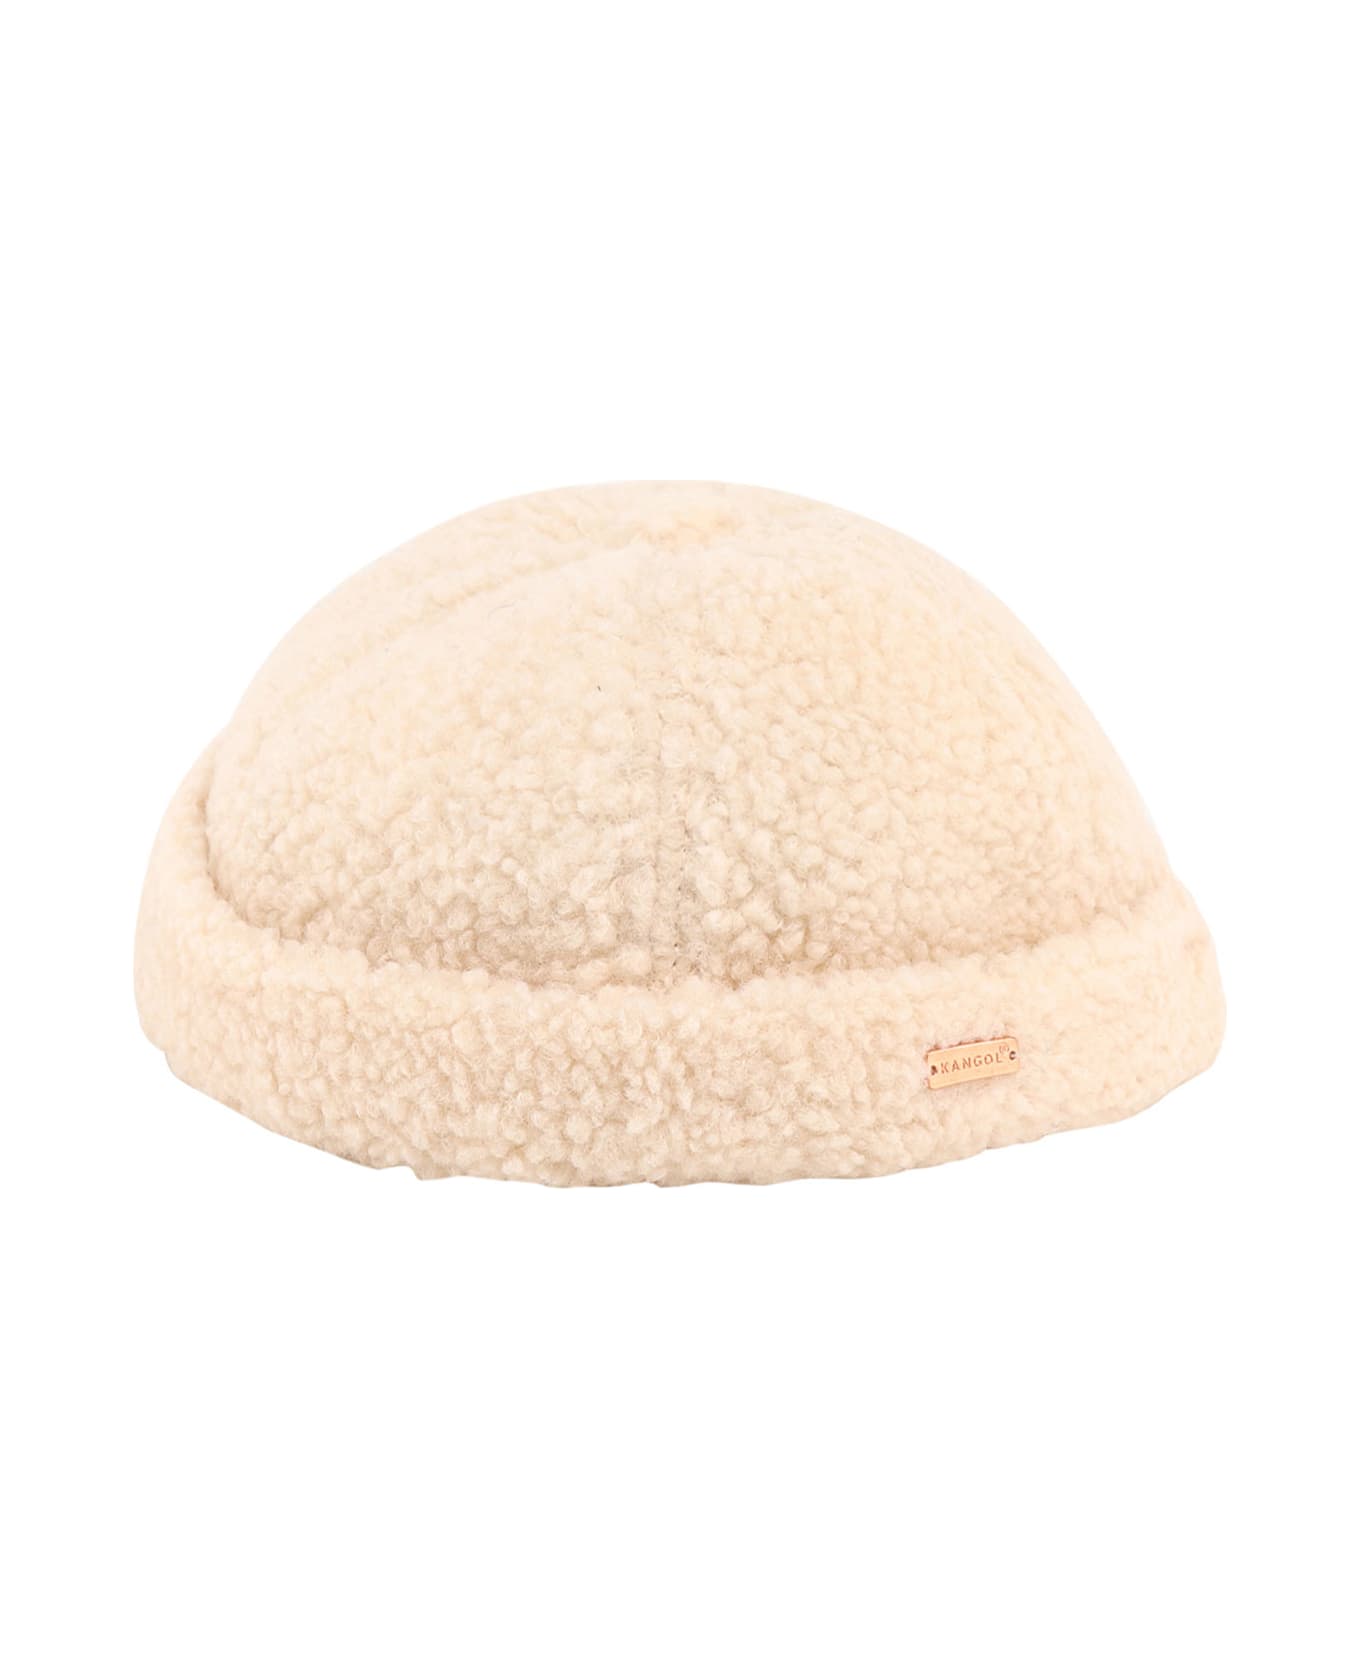 Kangol Hat - White 帽子